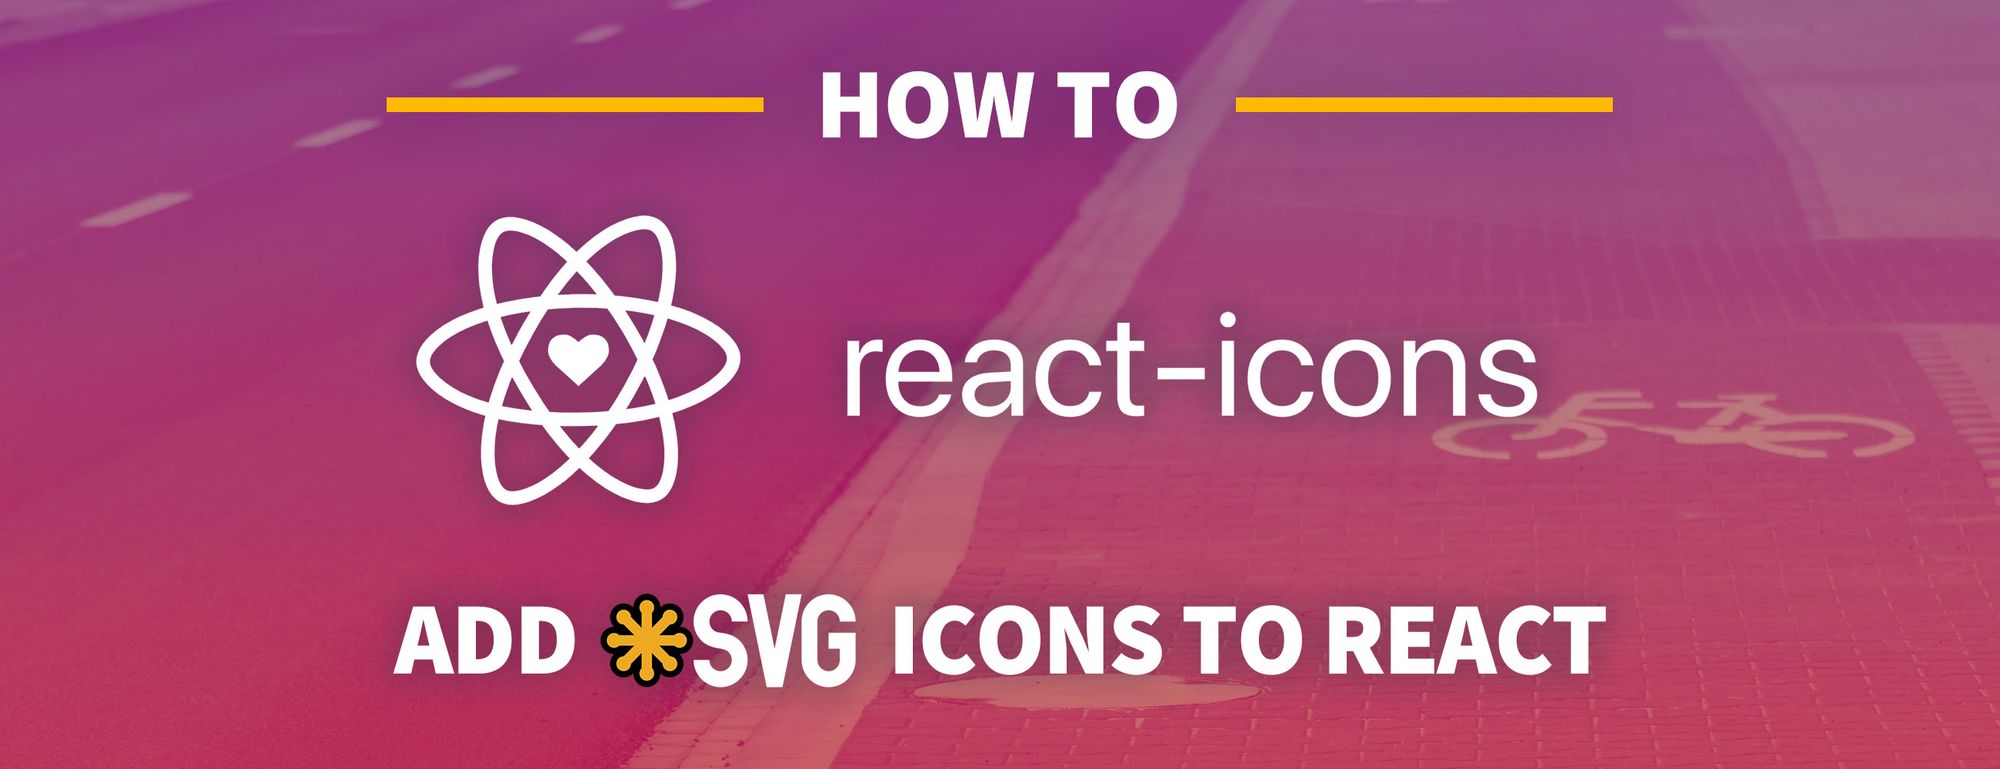 Nếu bạn đang tìm cách sử dụng biểu tượng SVG trực quan trên trang web của mình, thì React Icons và Font Awesome chính là giải pháp cho bạn. Những thư viện này giúp bạn tạo ra những biểu tượng và hình ảnh đáp ứng cực nhanh và tiện lợi. Hãy tham khảo hướng dẫn sử dụng trên mạng để tận dụng những tính năng tuyệt vời này.